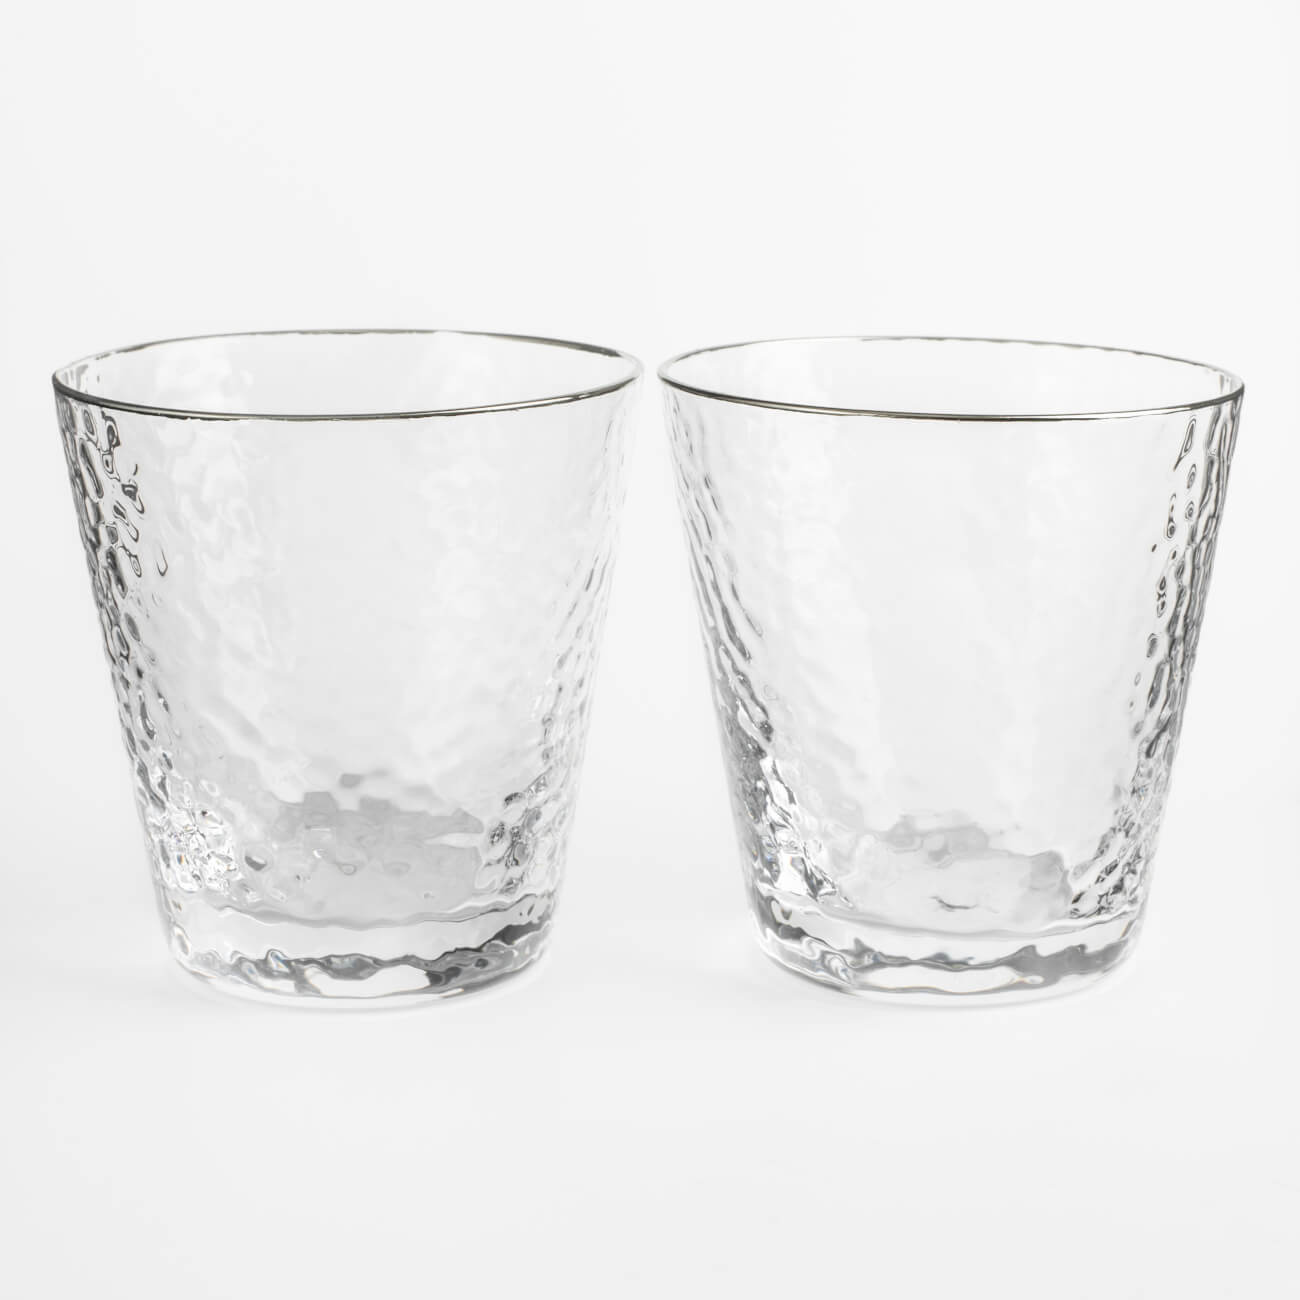 Стакан для виски, 270 мл, 2 шт, стекло, с серебристым кантом, Ripply silver стакан 450 мл 2 шт стекло ripply